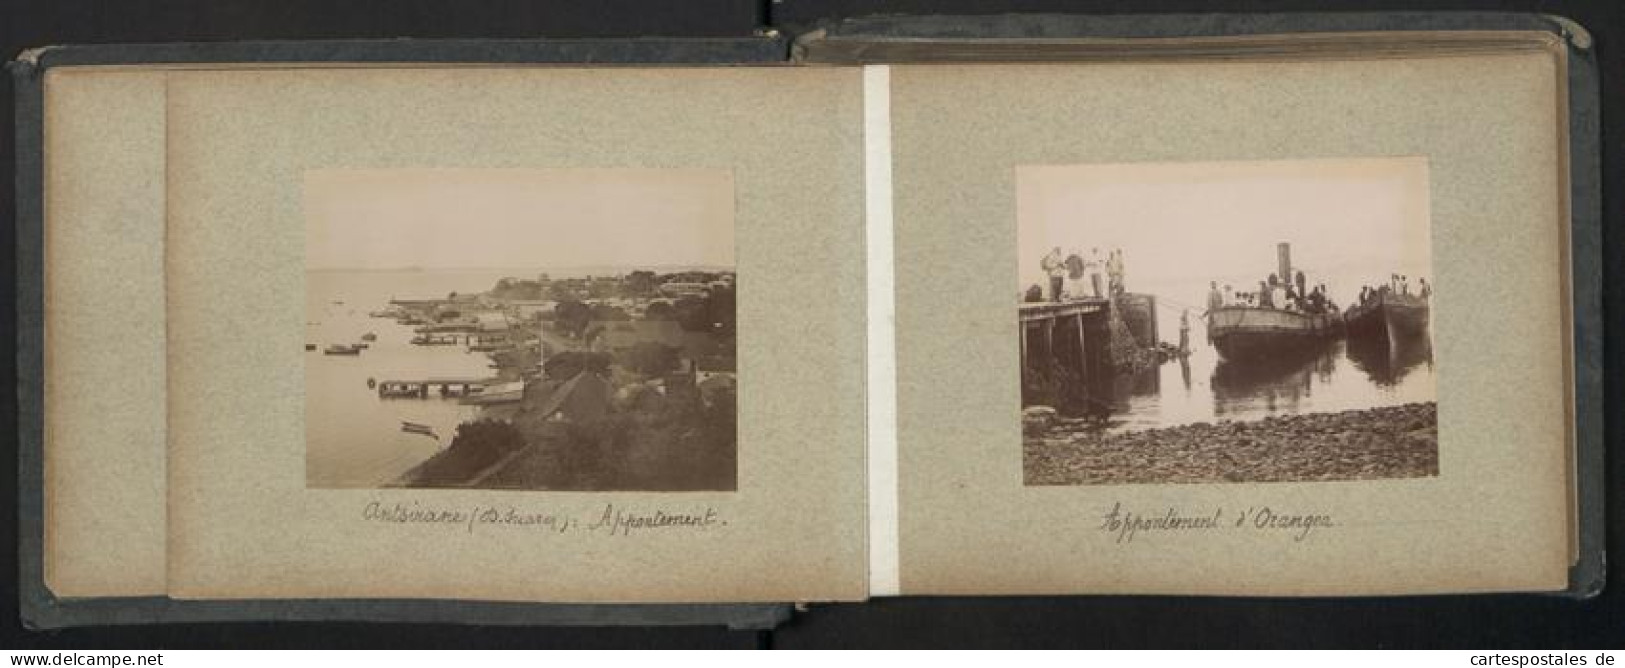 Fotoalbum mit 52 Fotografien Madagaskar, französische Kolonie, Kolonial Soldaten, Tracht, zerstörte Orte 